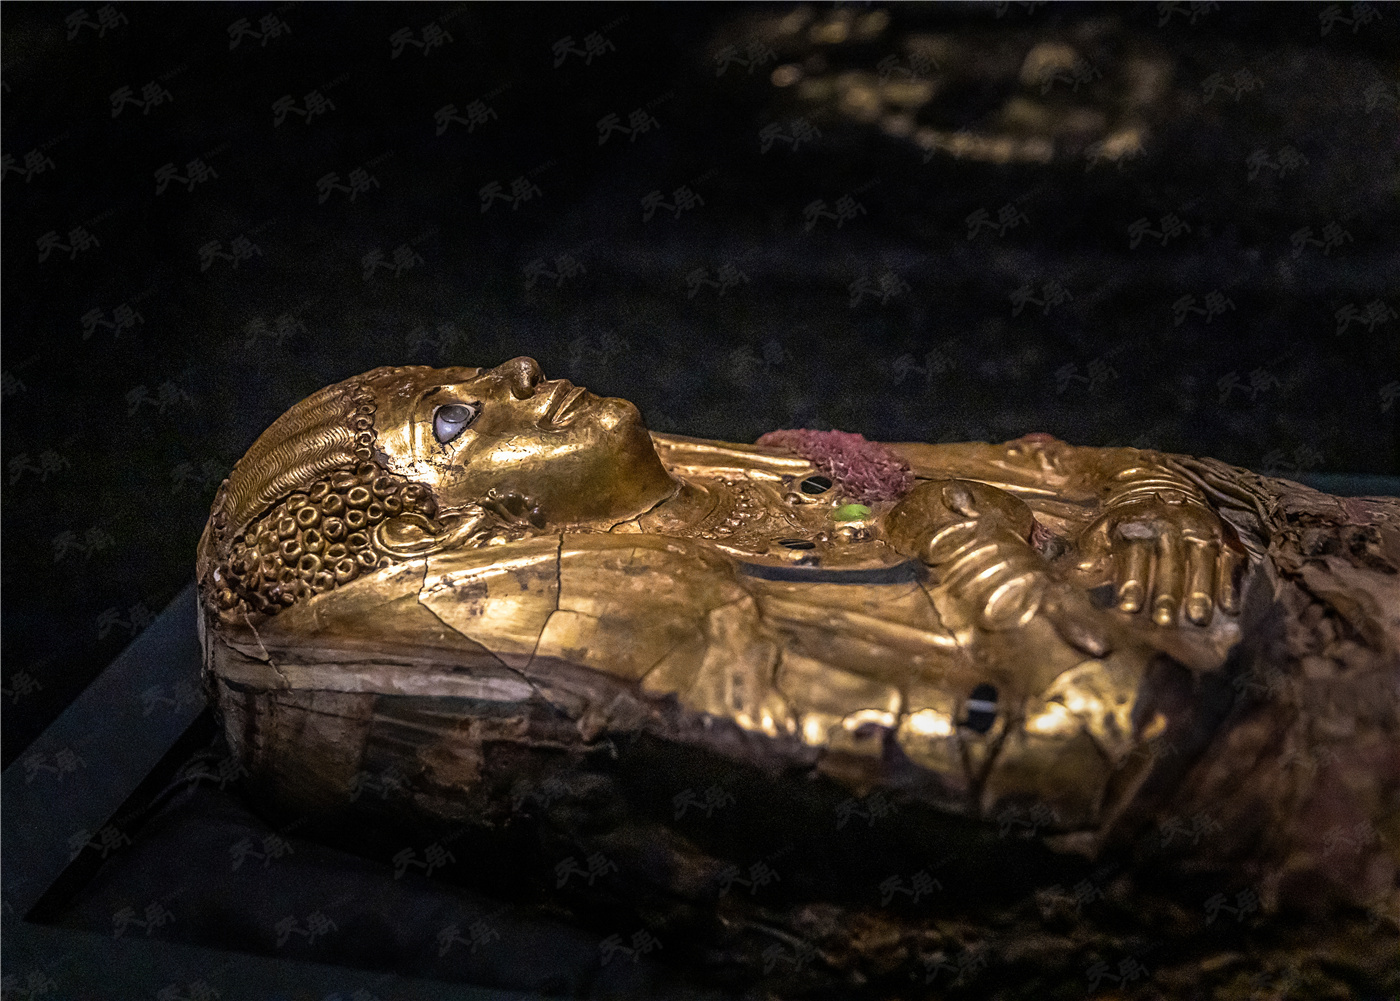 遇见古埃及·黄金木乃伊展3 展览核心部分——精美华丽的古埃及黄金木乃伊 - 知乎